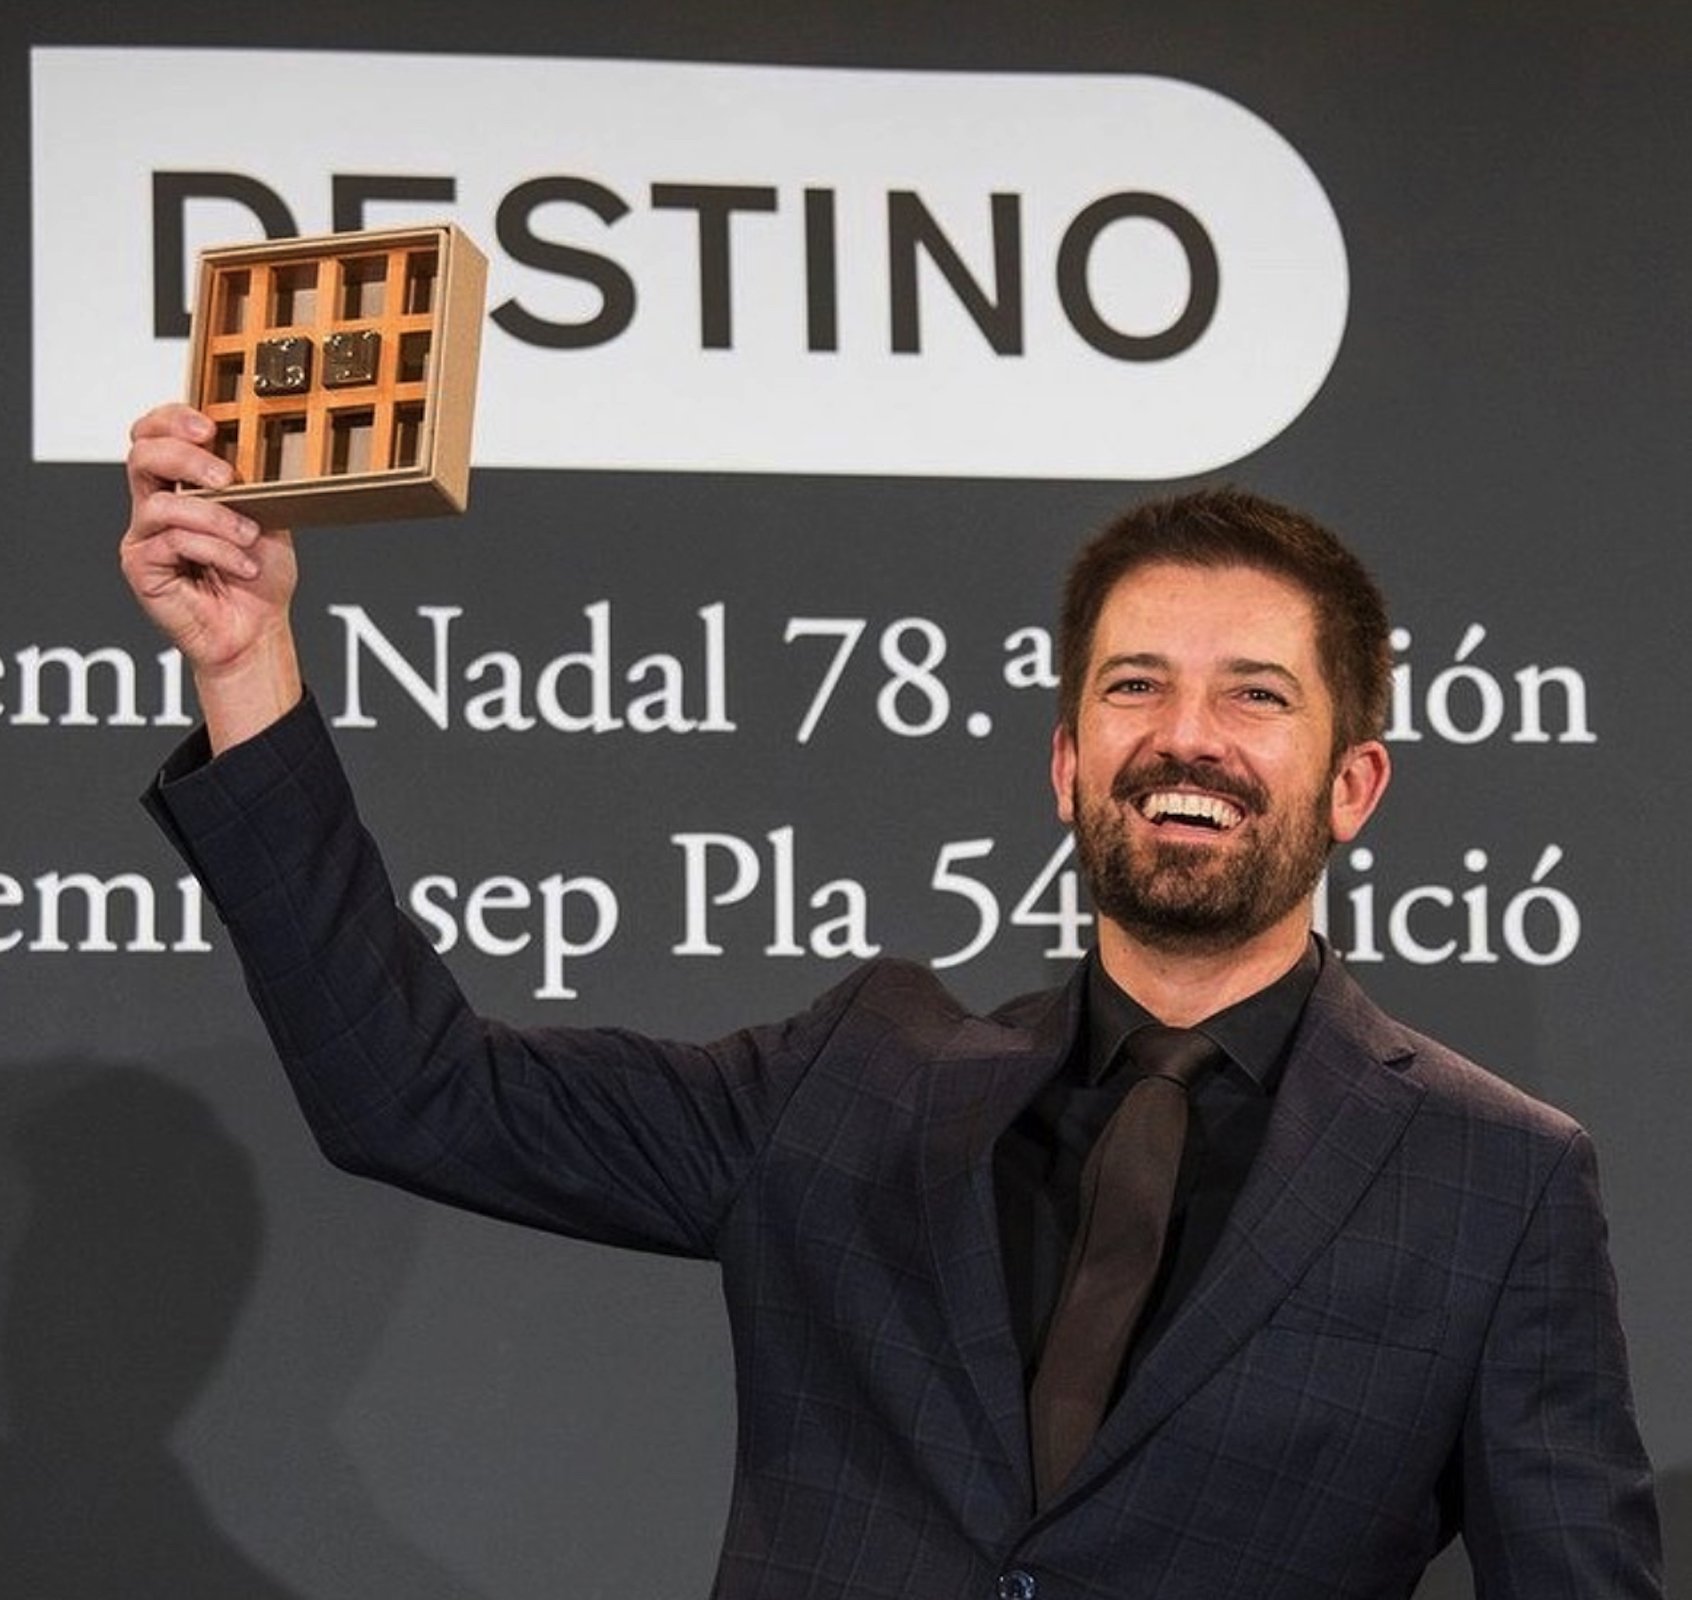 Toni Cruanyes guanya el premi Josep Pla de prosa, el marit orgullós: "T'estimo"